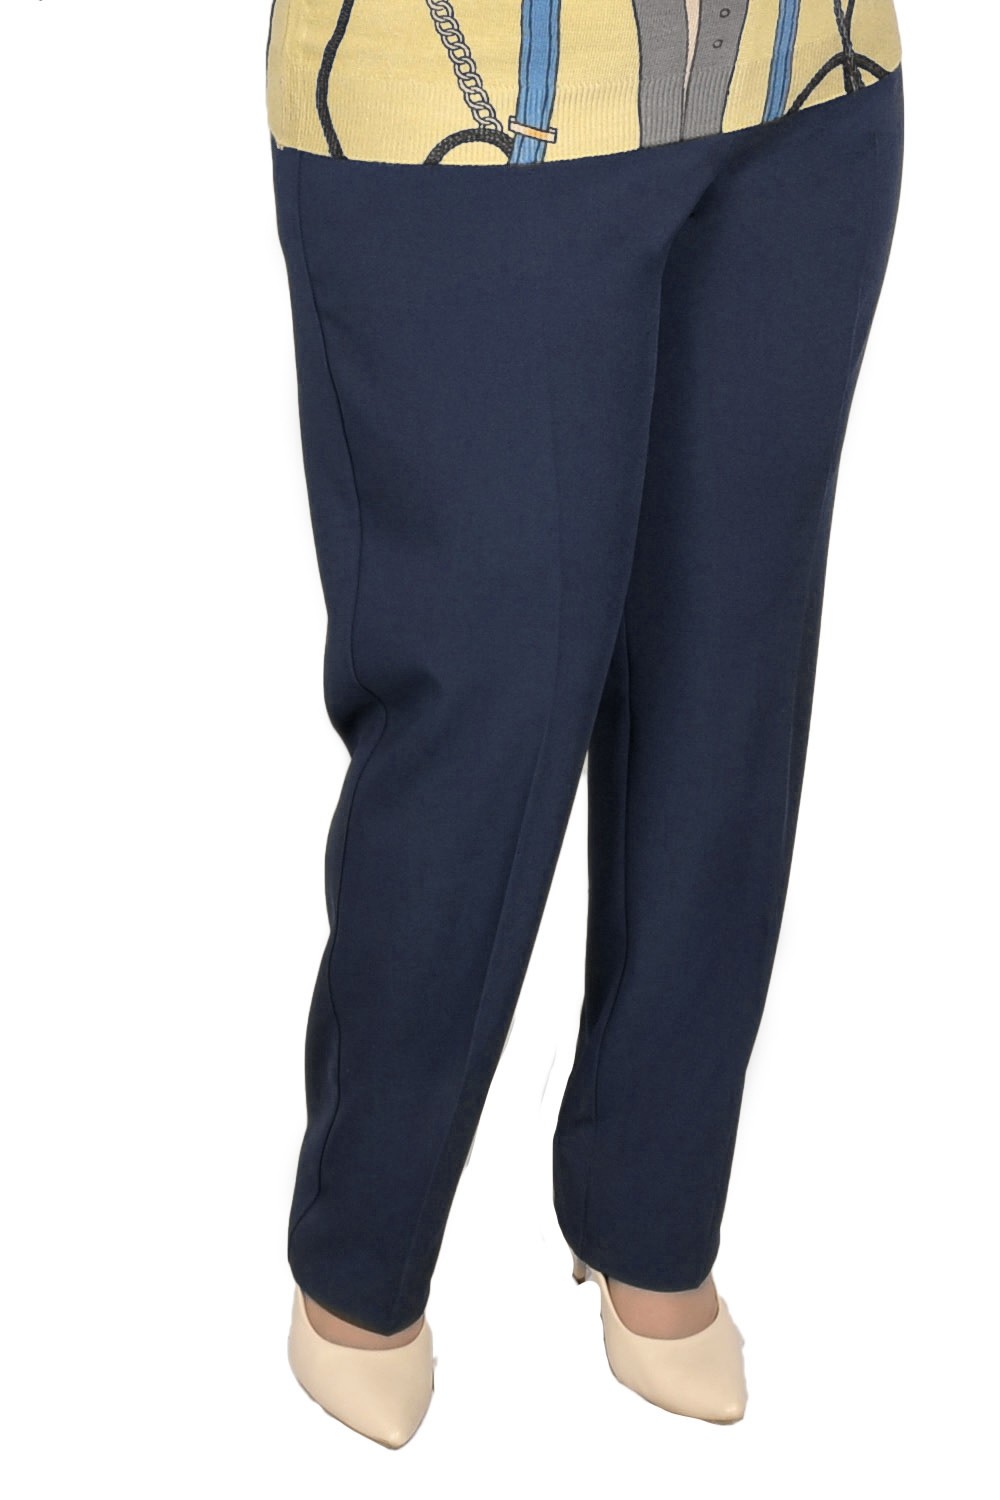 Pantalon elegant Agnes, model 8045 (Bleumarin)